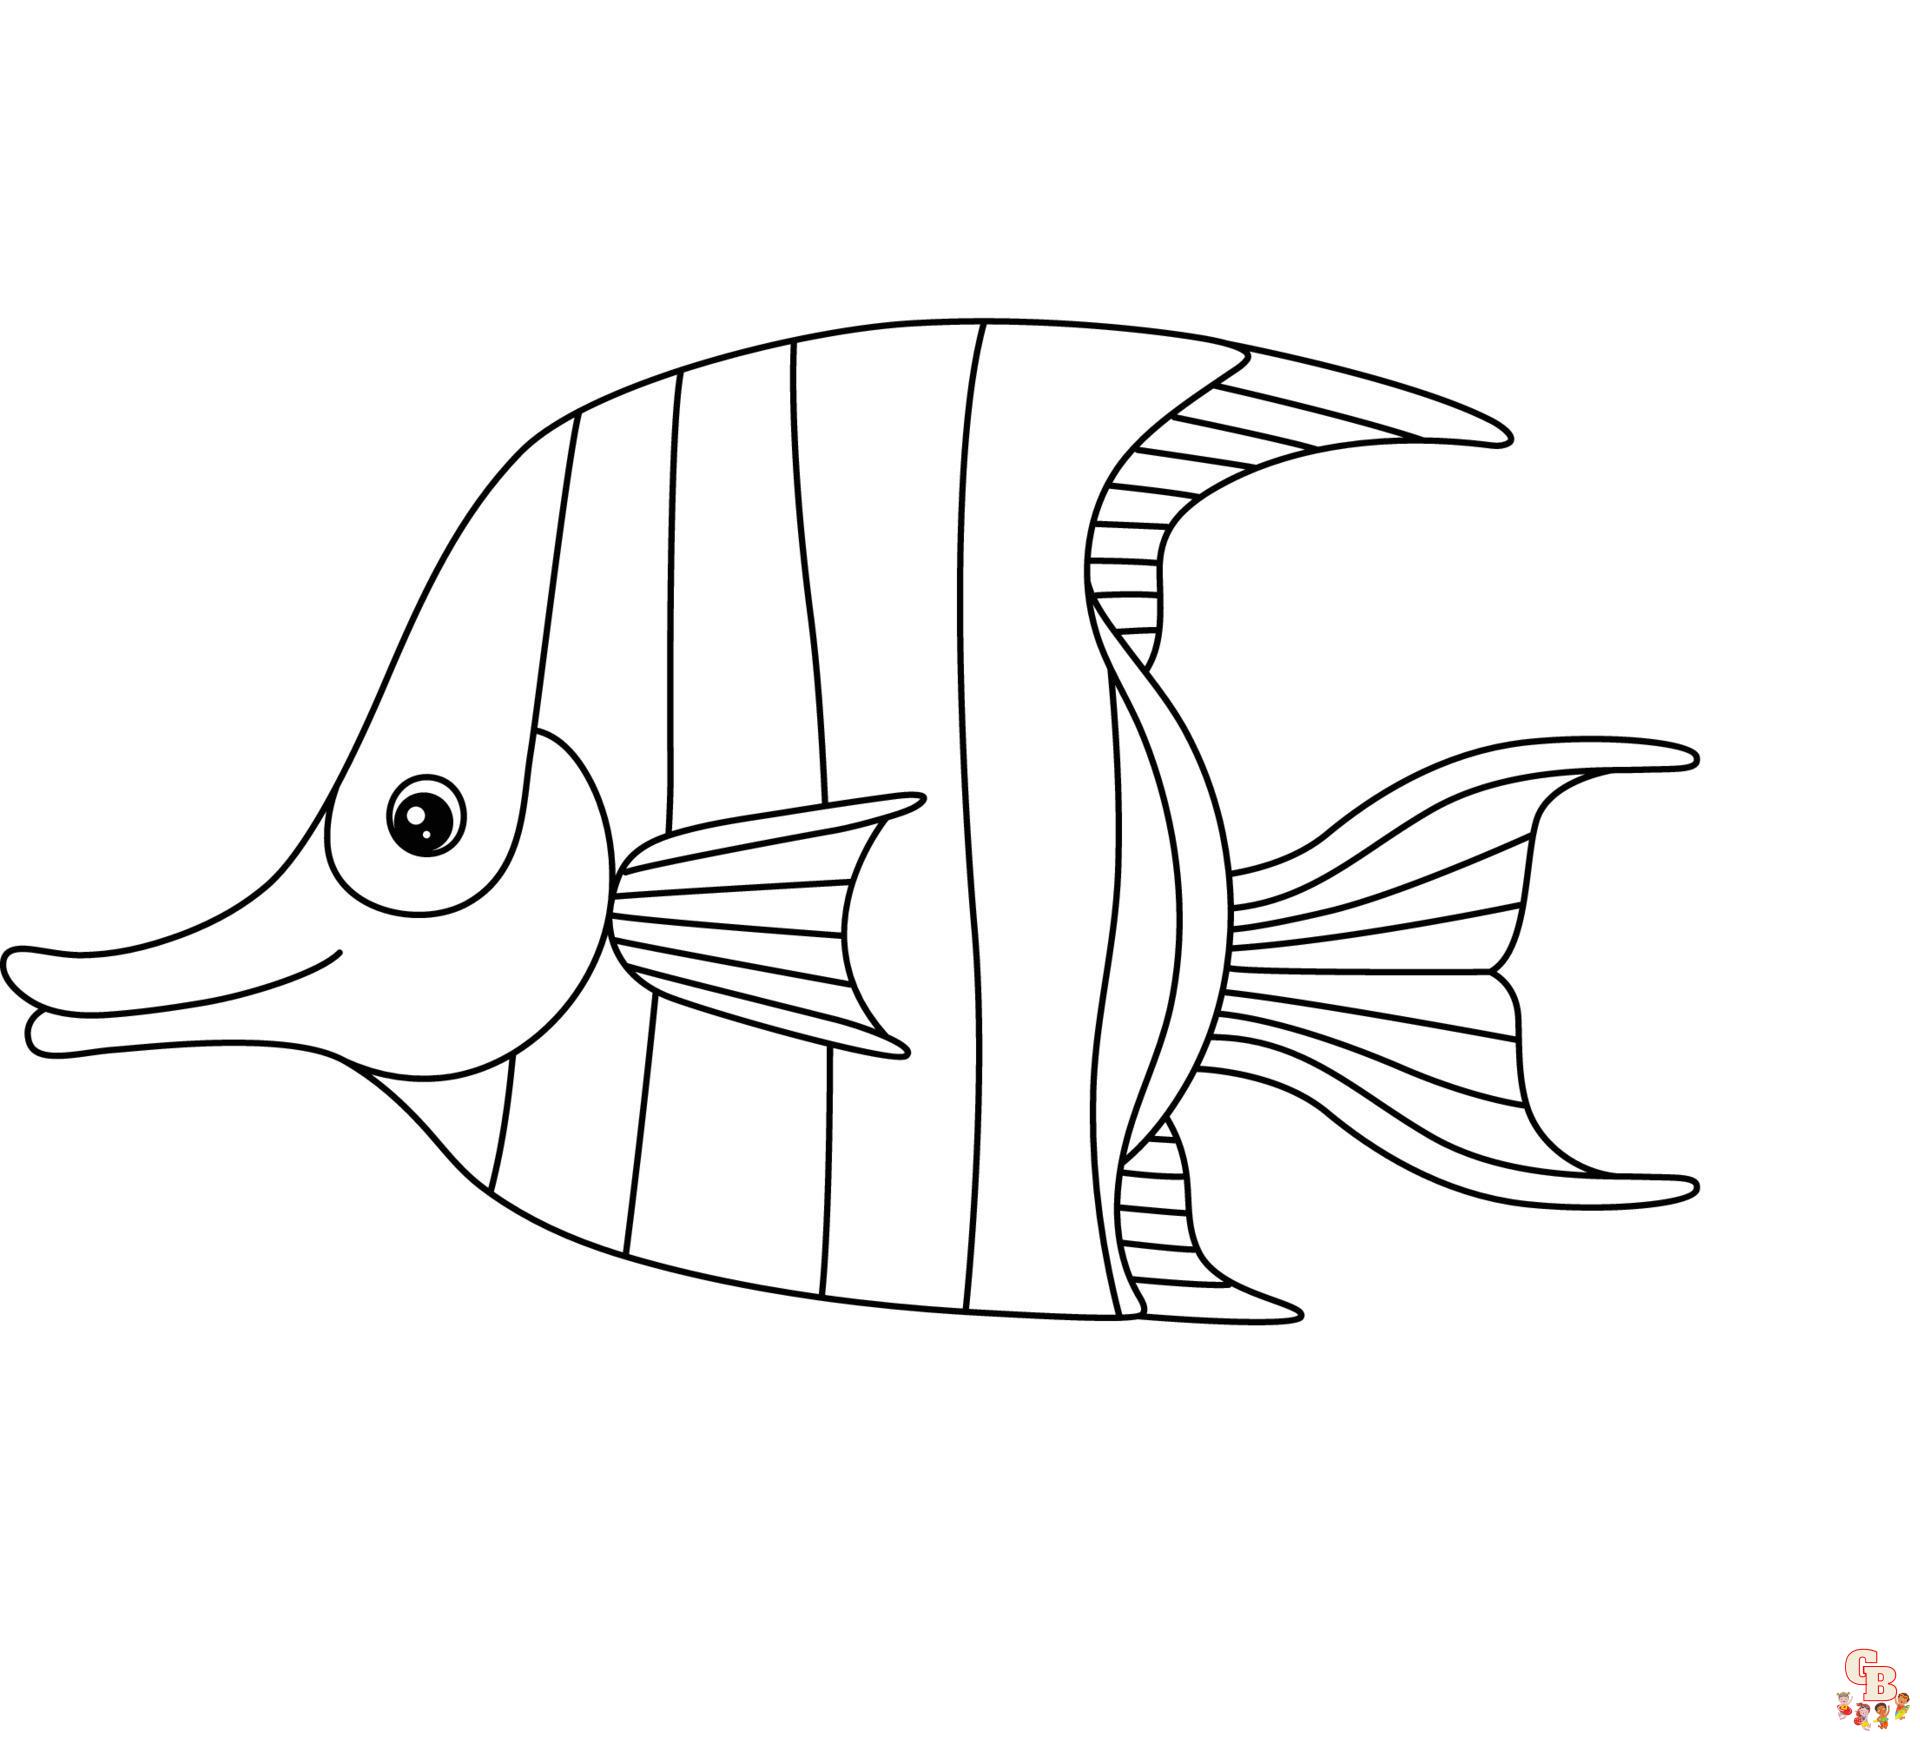 Kaiserfisch ausmalbilder zum ausdrucken